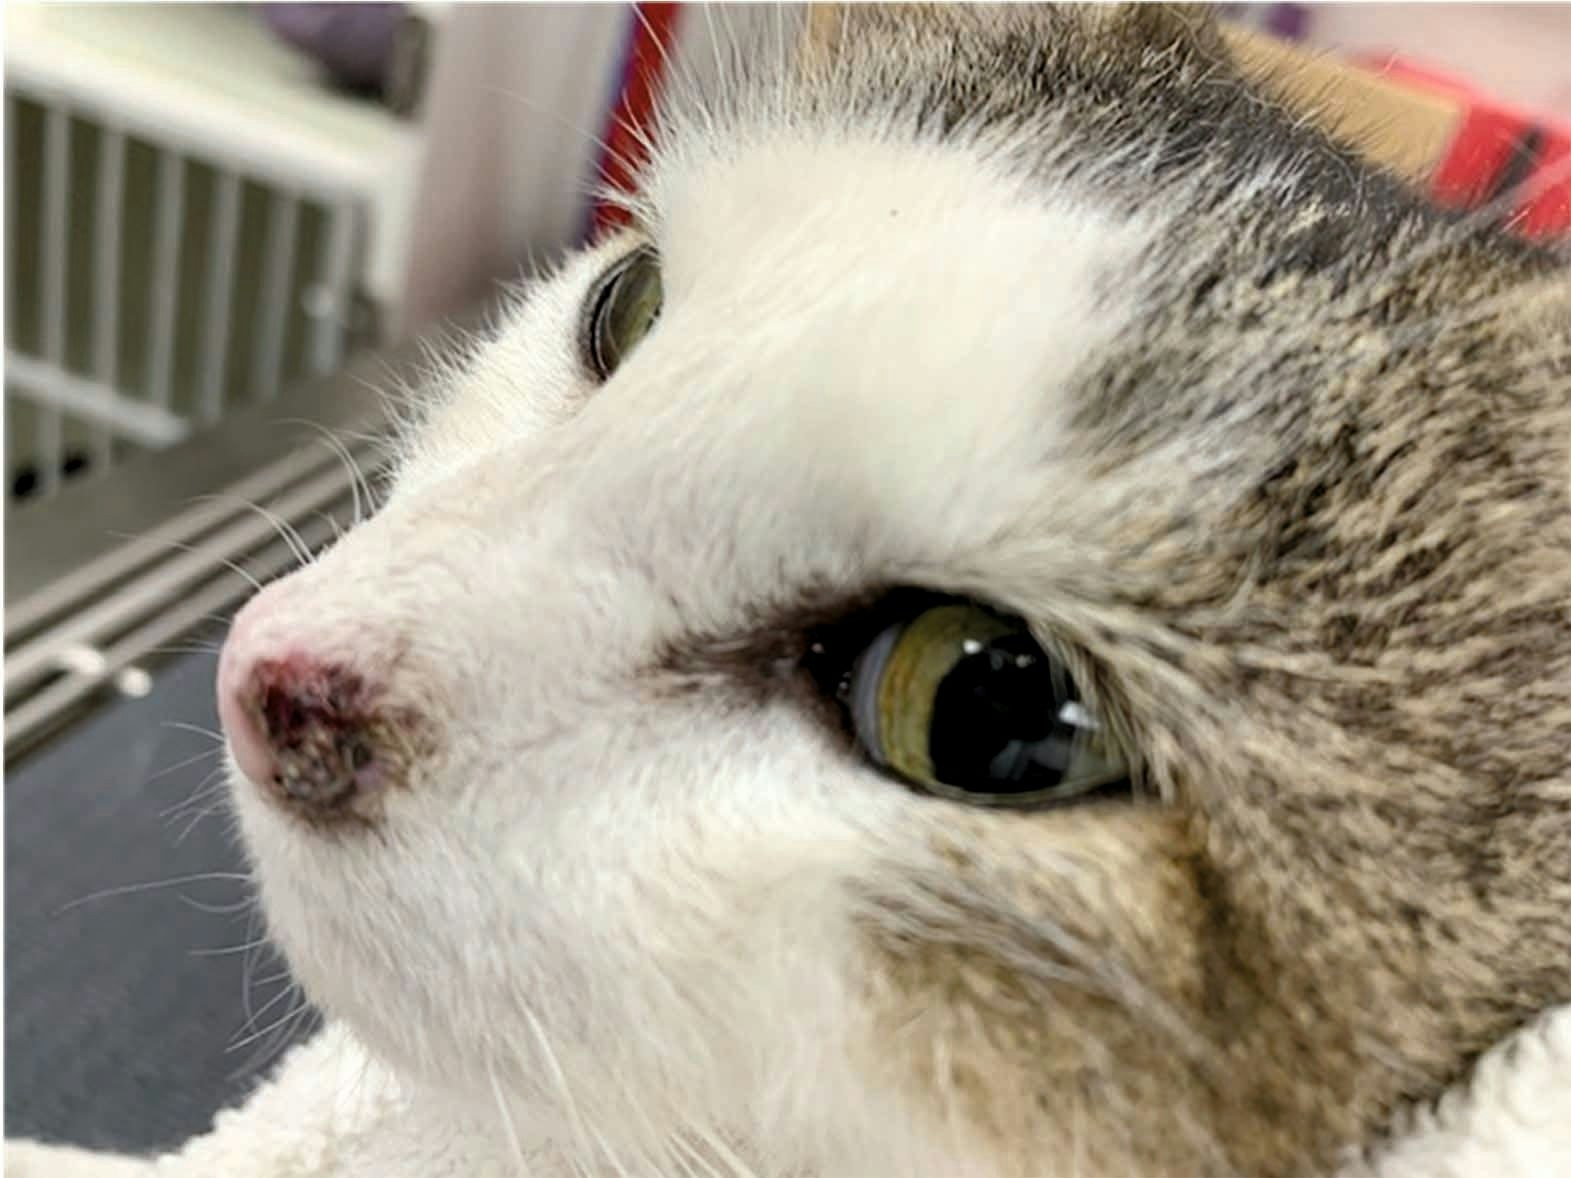 사진 속 고양이는 10살 된 도메스틱 숏헤어 암컷 고양이로 중성화되었으며 농장에서 생활하고 있다. 이 고양이의 콧등 및 코평편 왼쪽에 1년간 아물지 않는 상처처럼 보이는 병변을 생검한 결과 편평세포암으로 진단되었다.